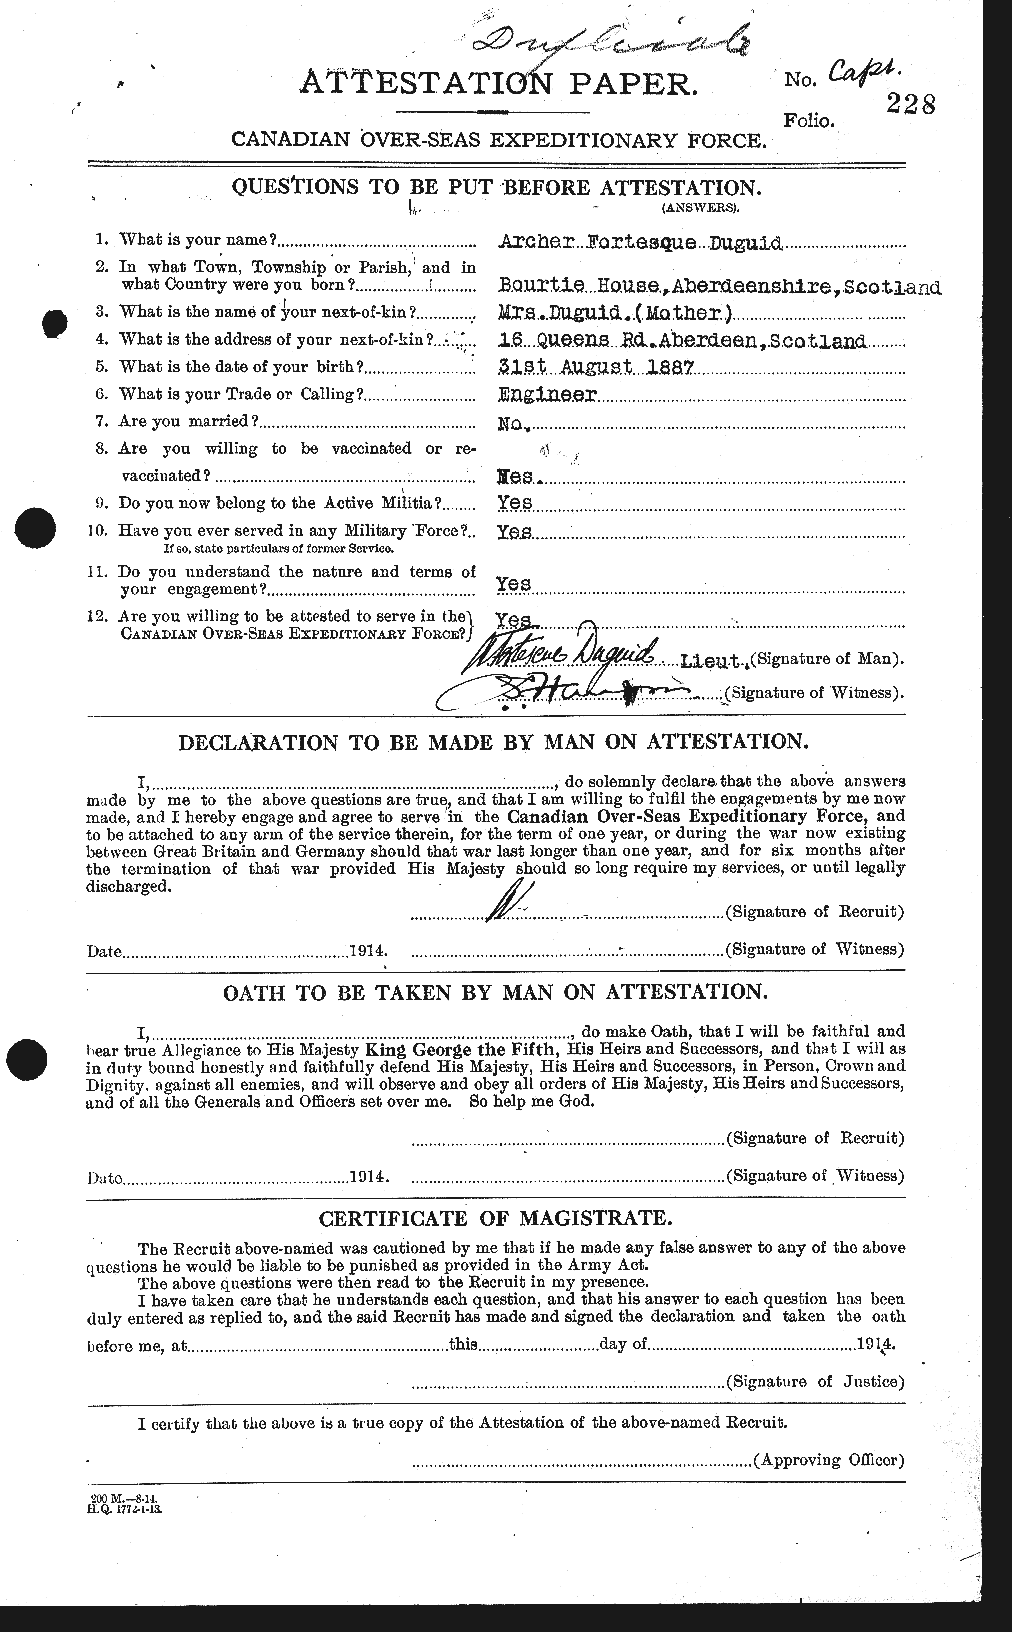 Dossiers du Personnel de la Première Guerre mondiale - CEC 301908a